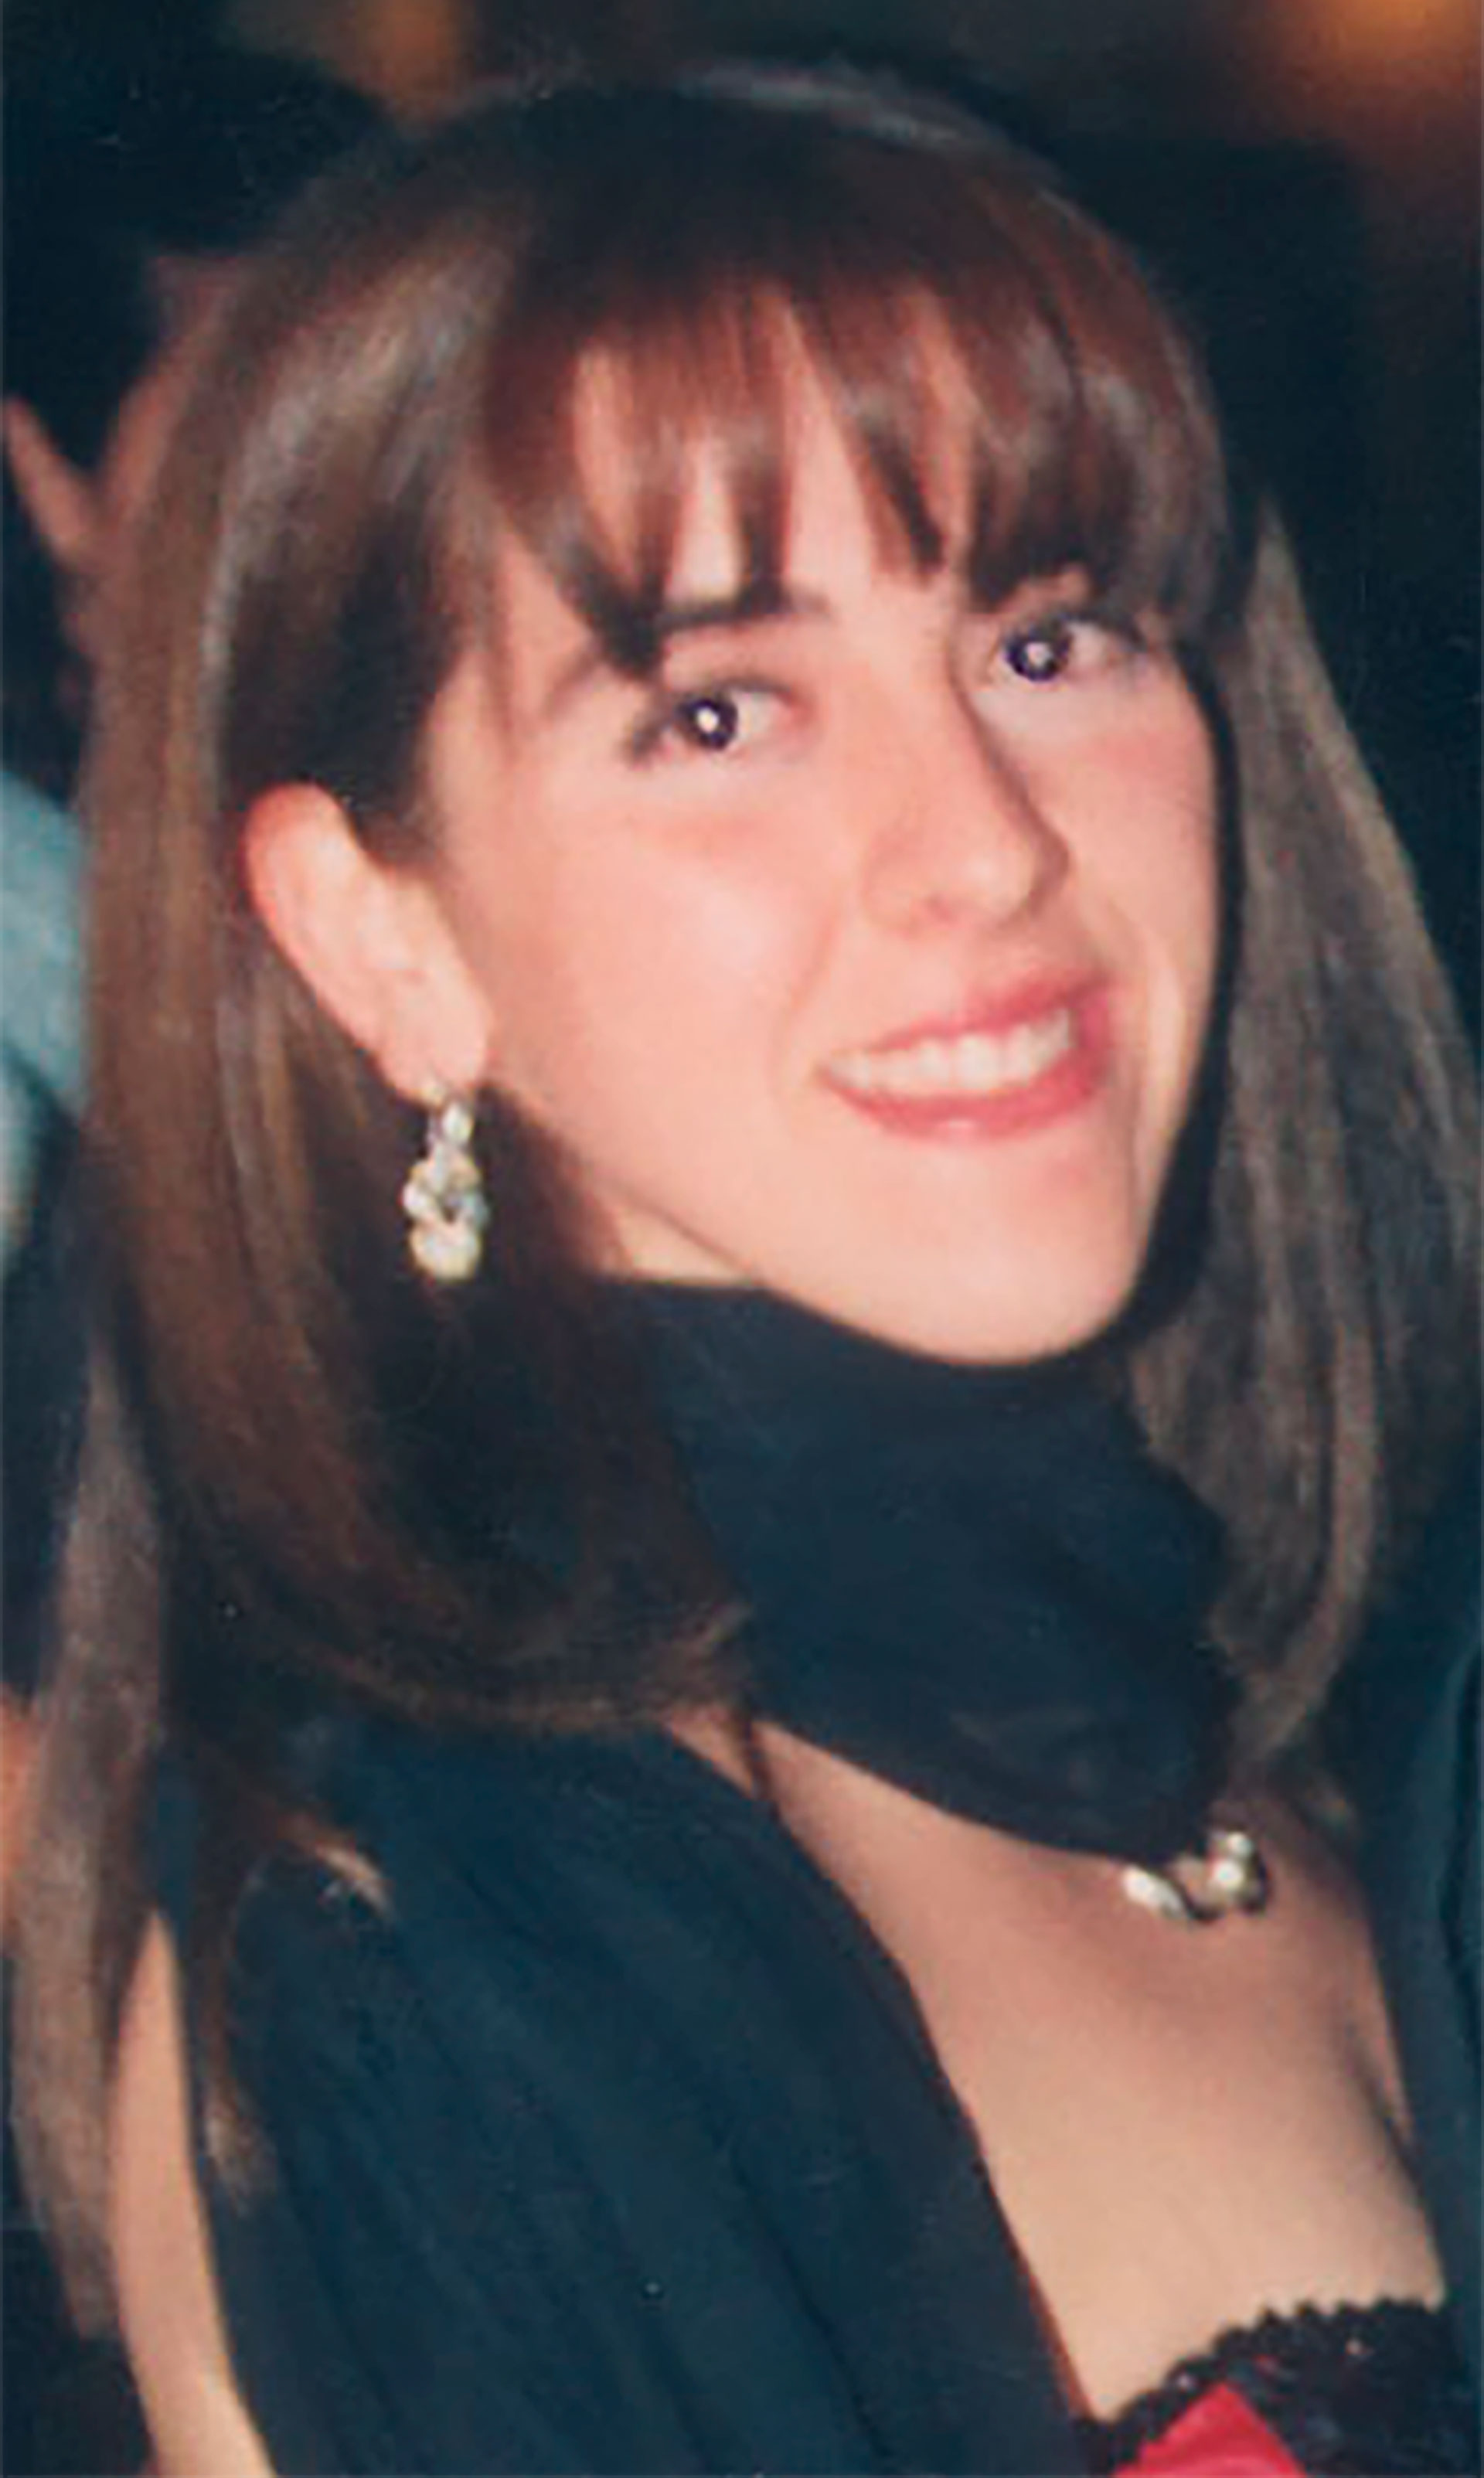 Marita Verón, en una fotografía poco antes de su secuestro y desaparición